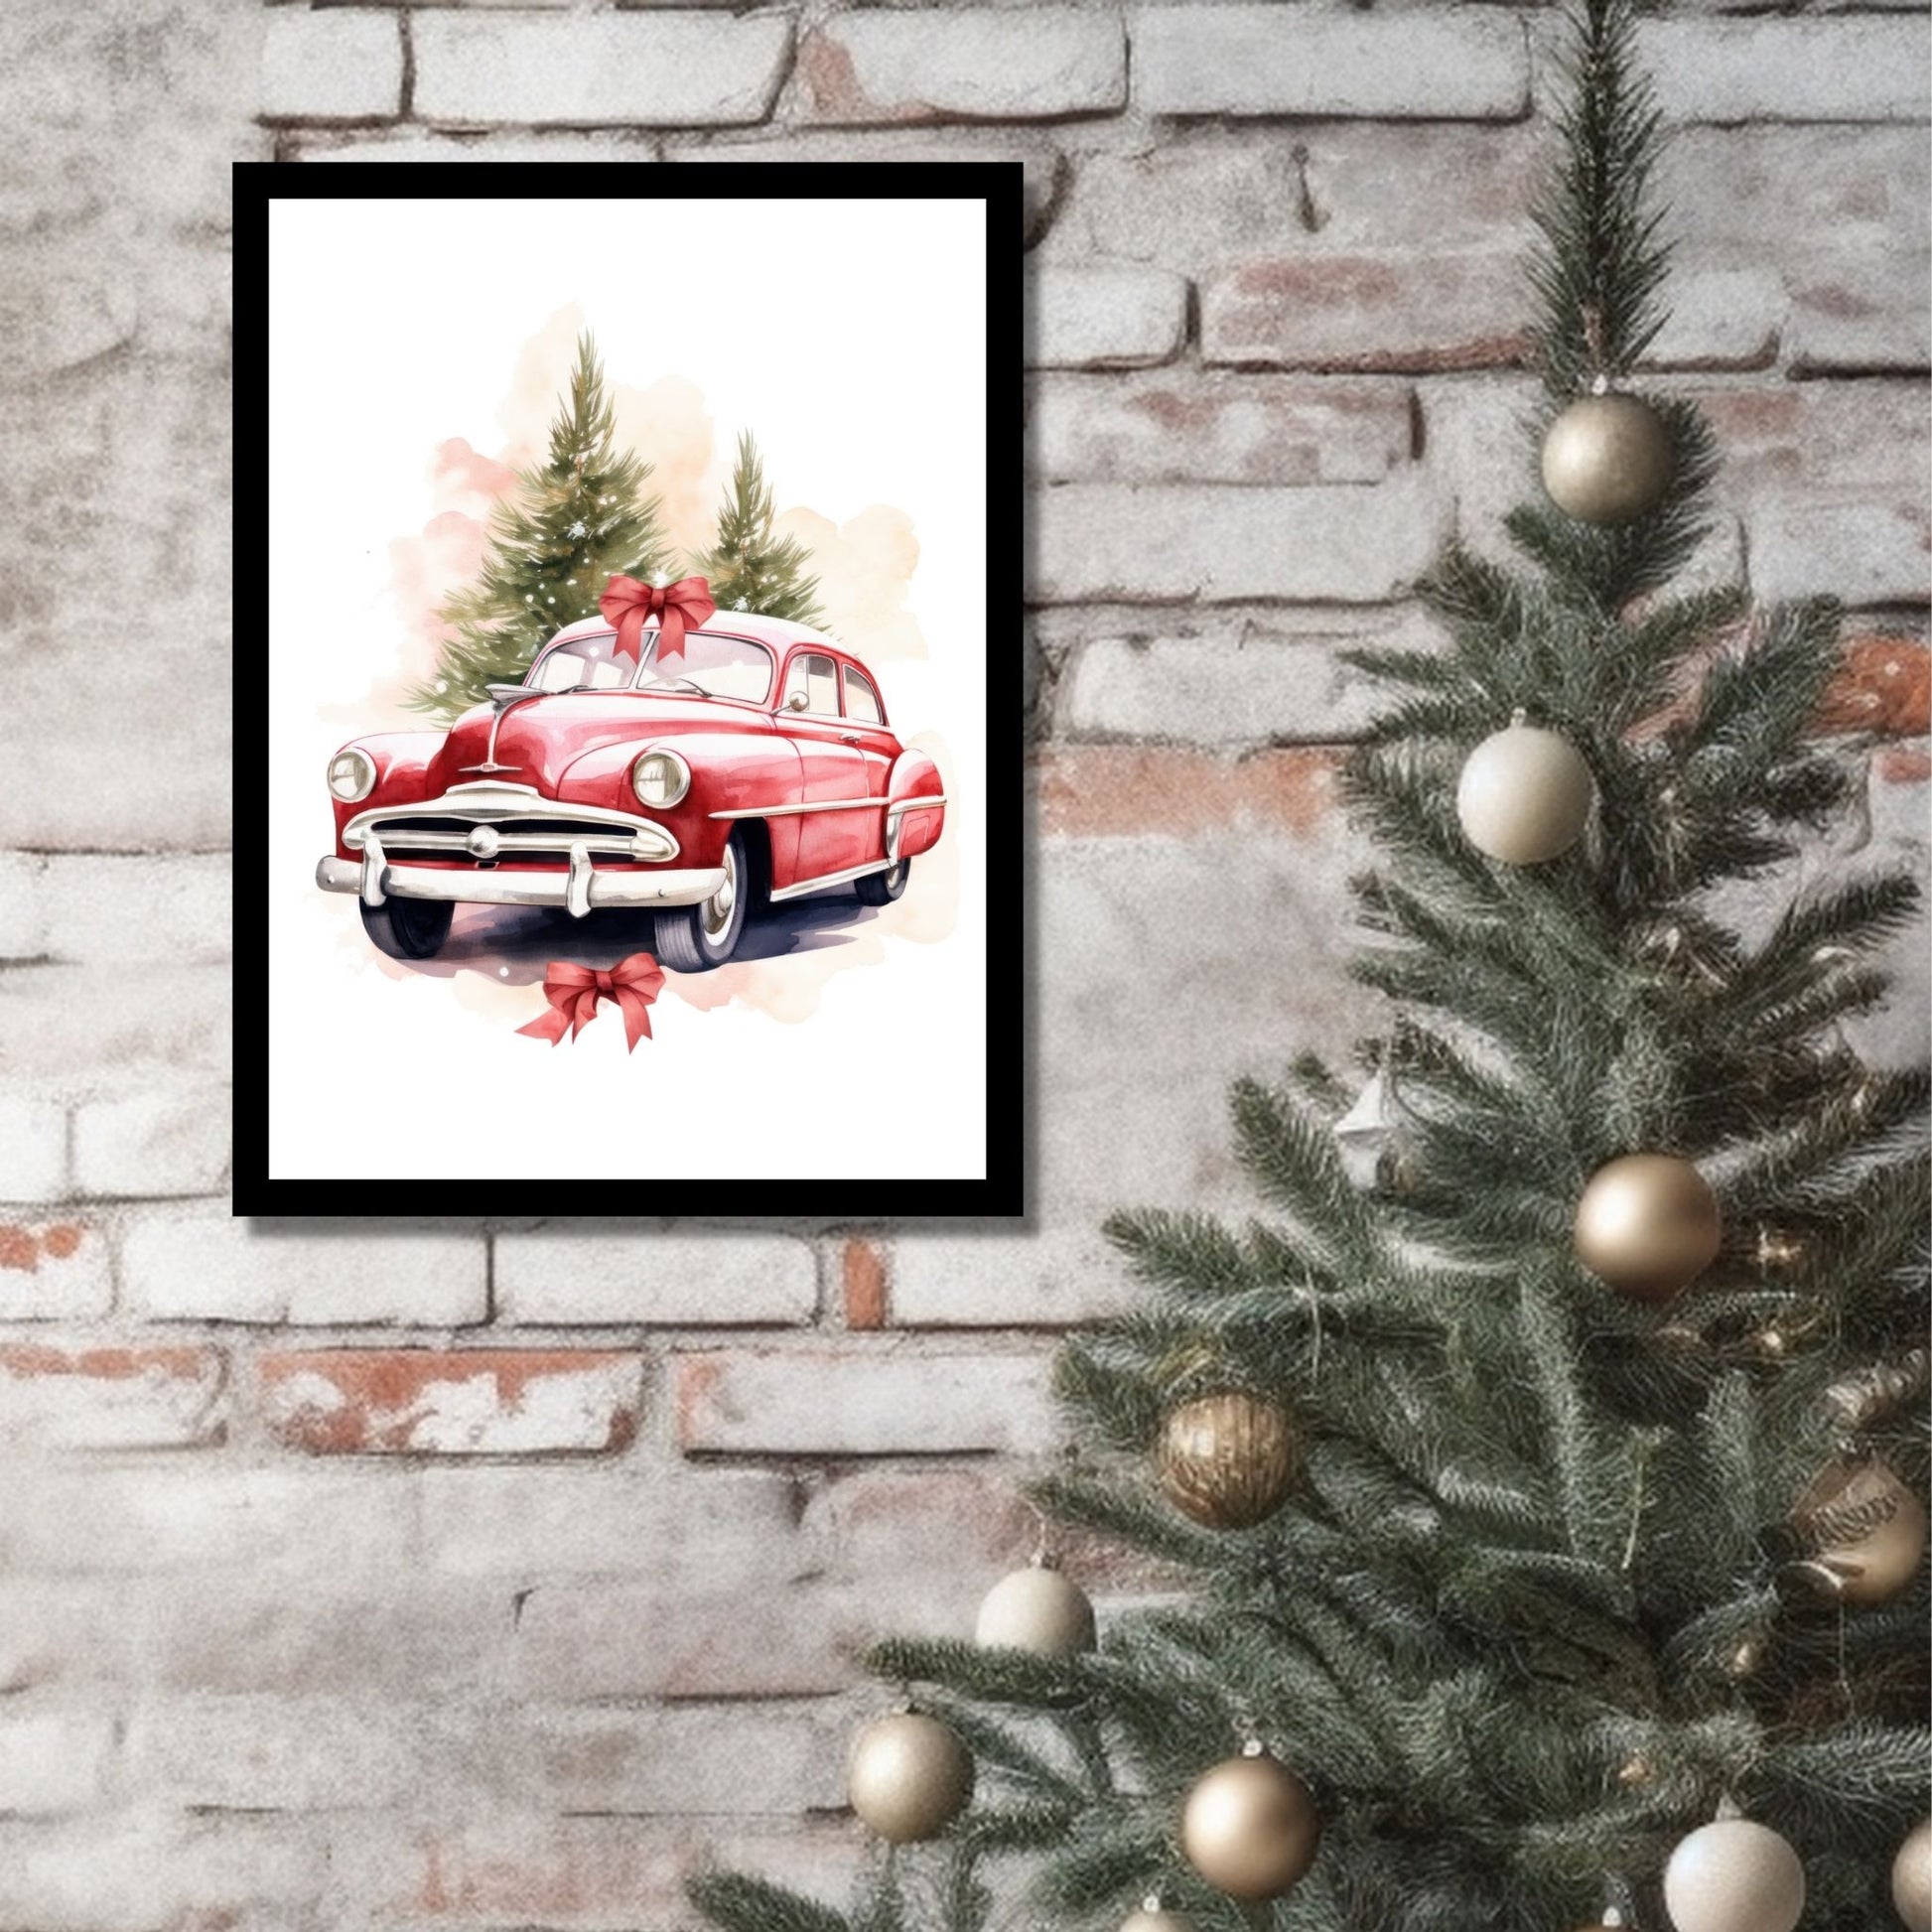 Plakat og lerret med grafisk julemotiv av gammel, rød veteranbil. Bilen kjører i en skog. På bildet henger motivet som plakaten i en sort ramme på en murvegg ved siden av et juletre.